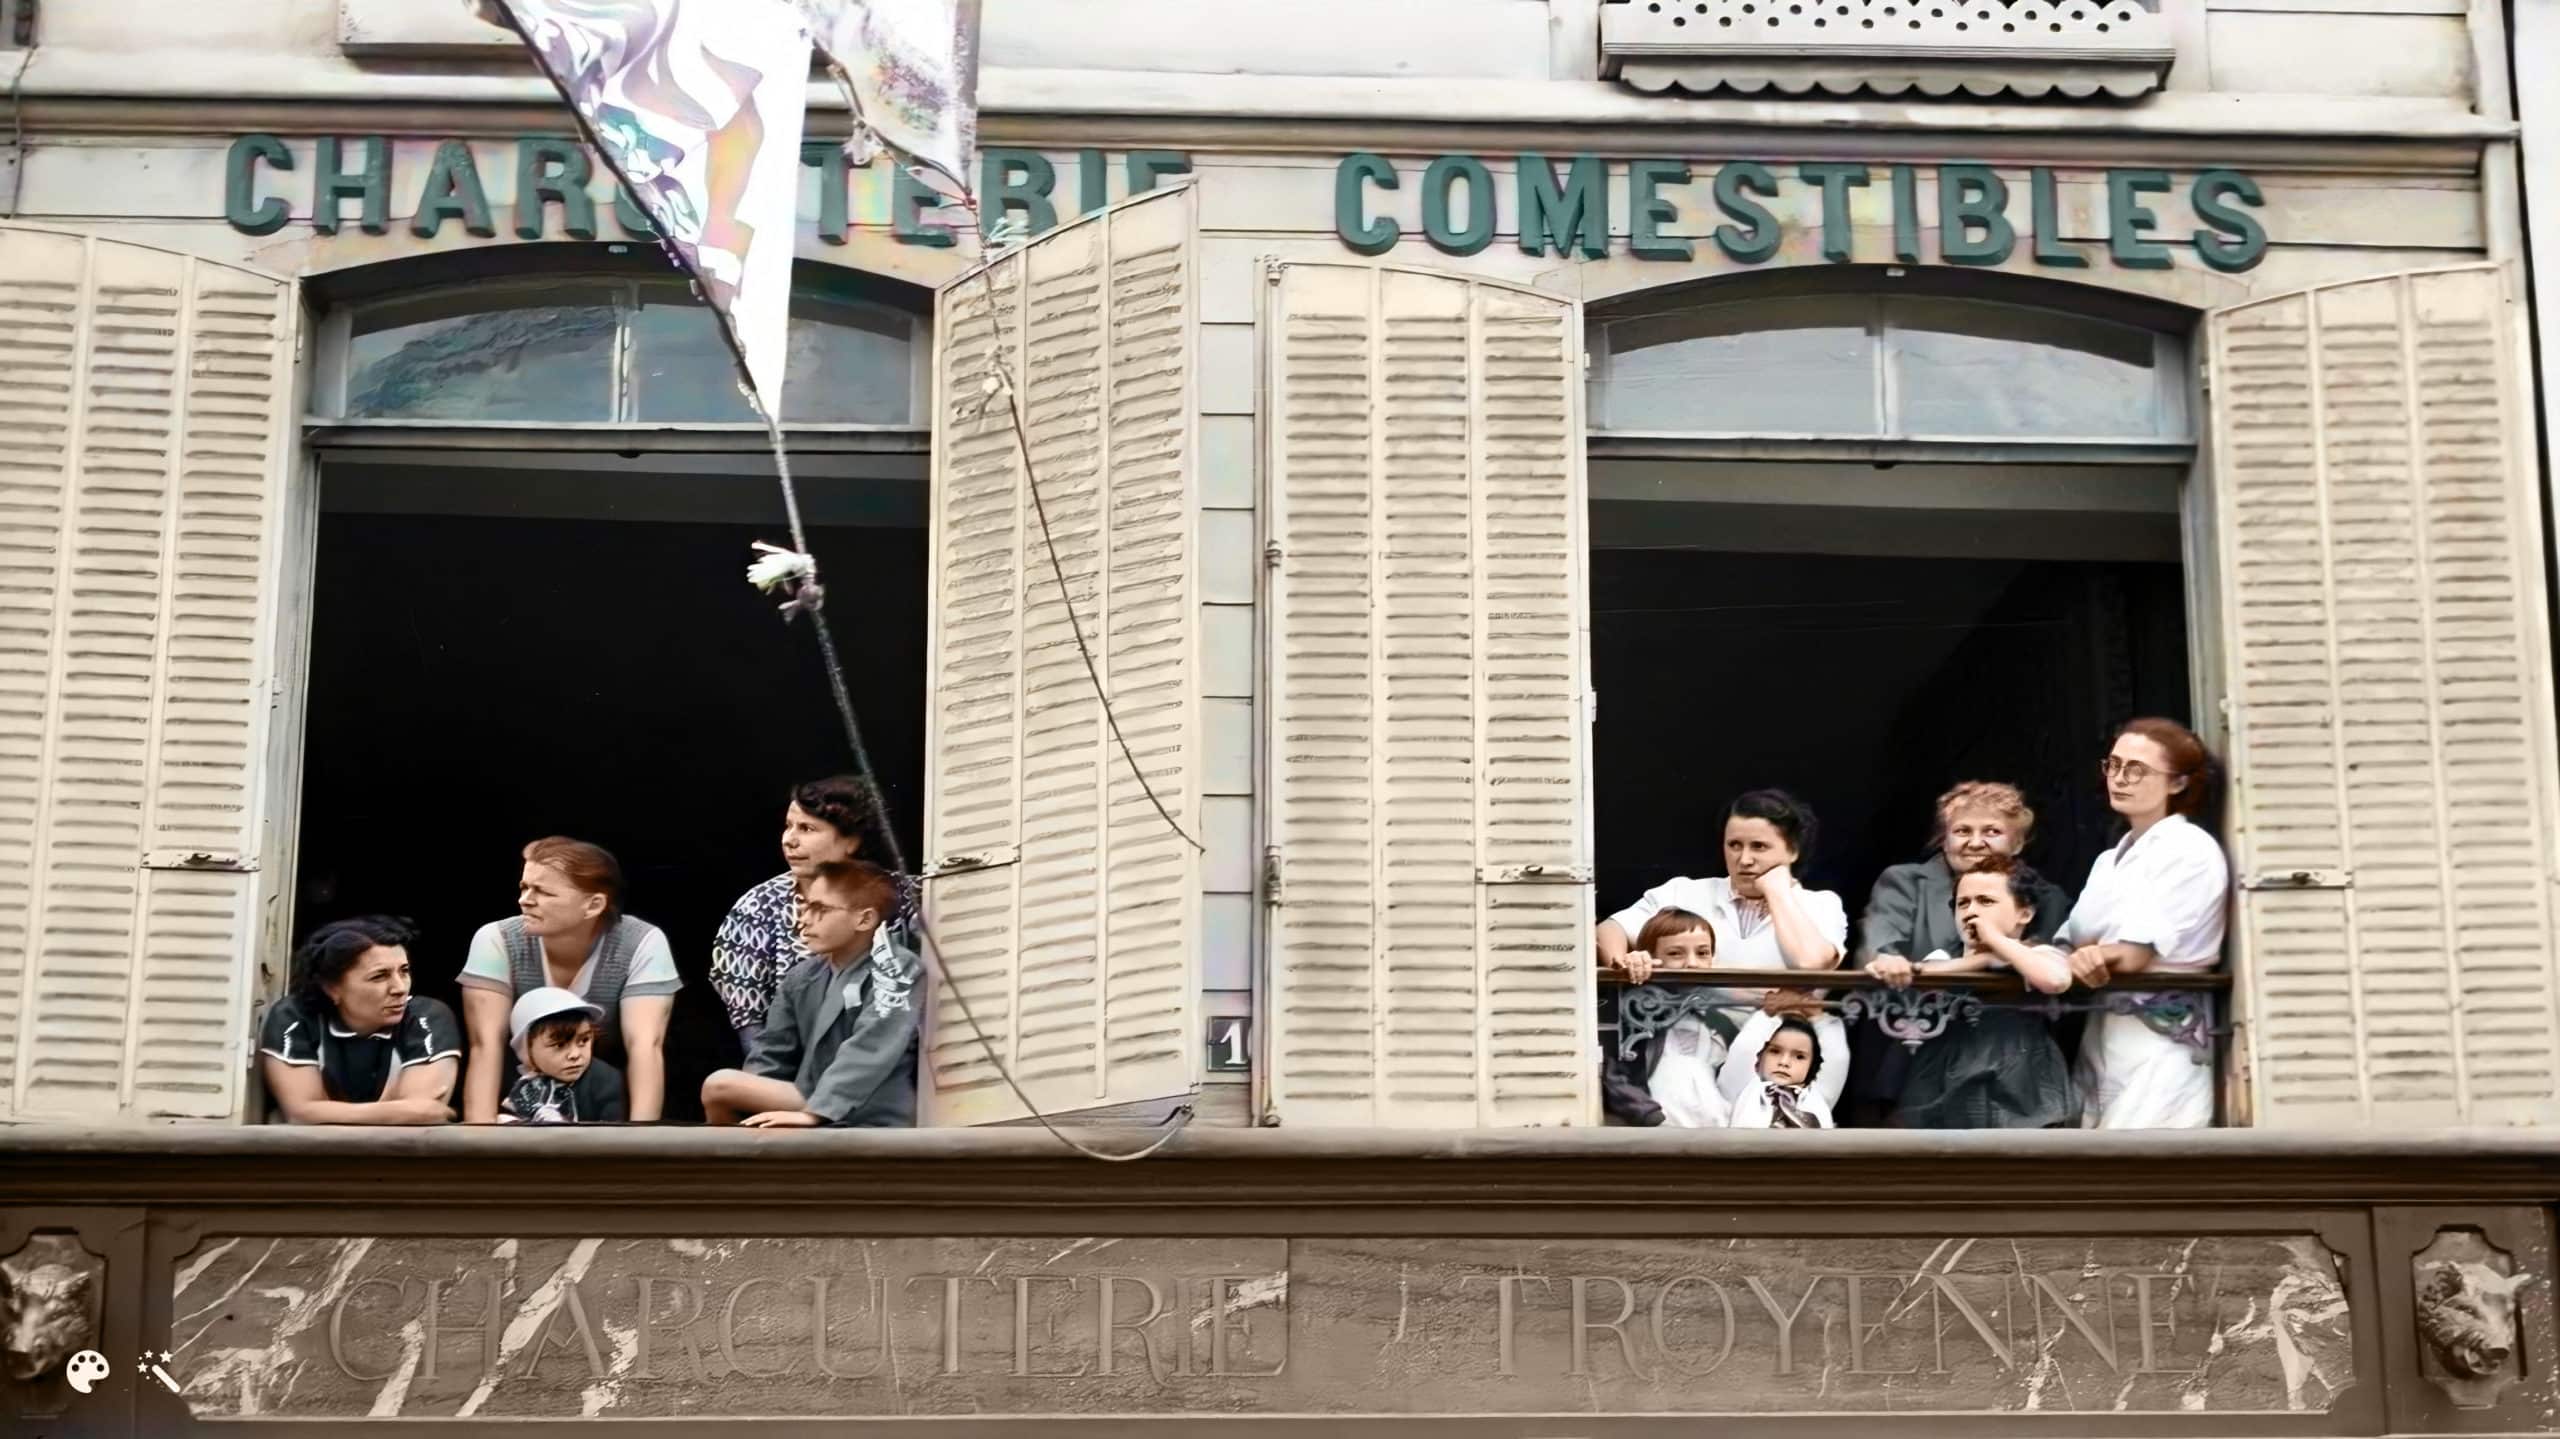 Pierre Boillon y su familia observan el paso del Tour de Francia por su negocio en Bar-sur-Aube. Foto cortesía de Pierre Boillon, coloreada y mejorada por MyHeritage